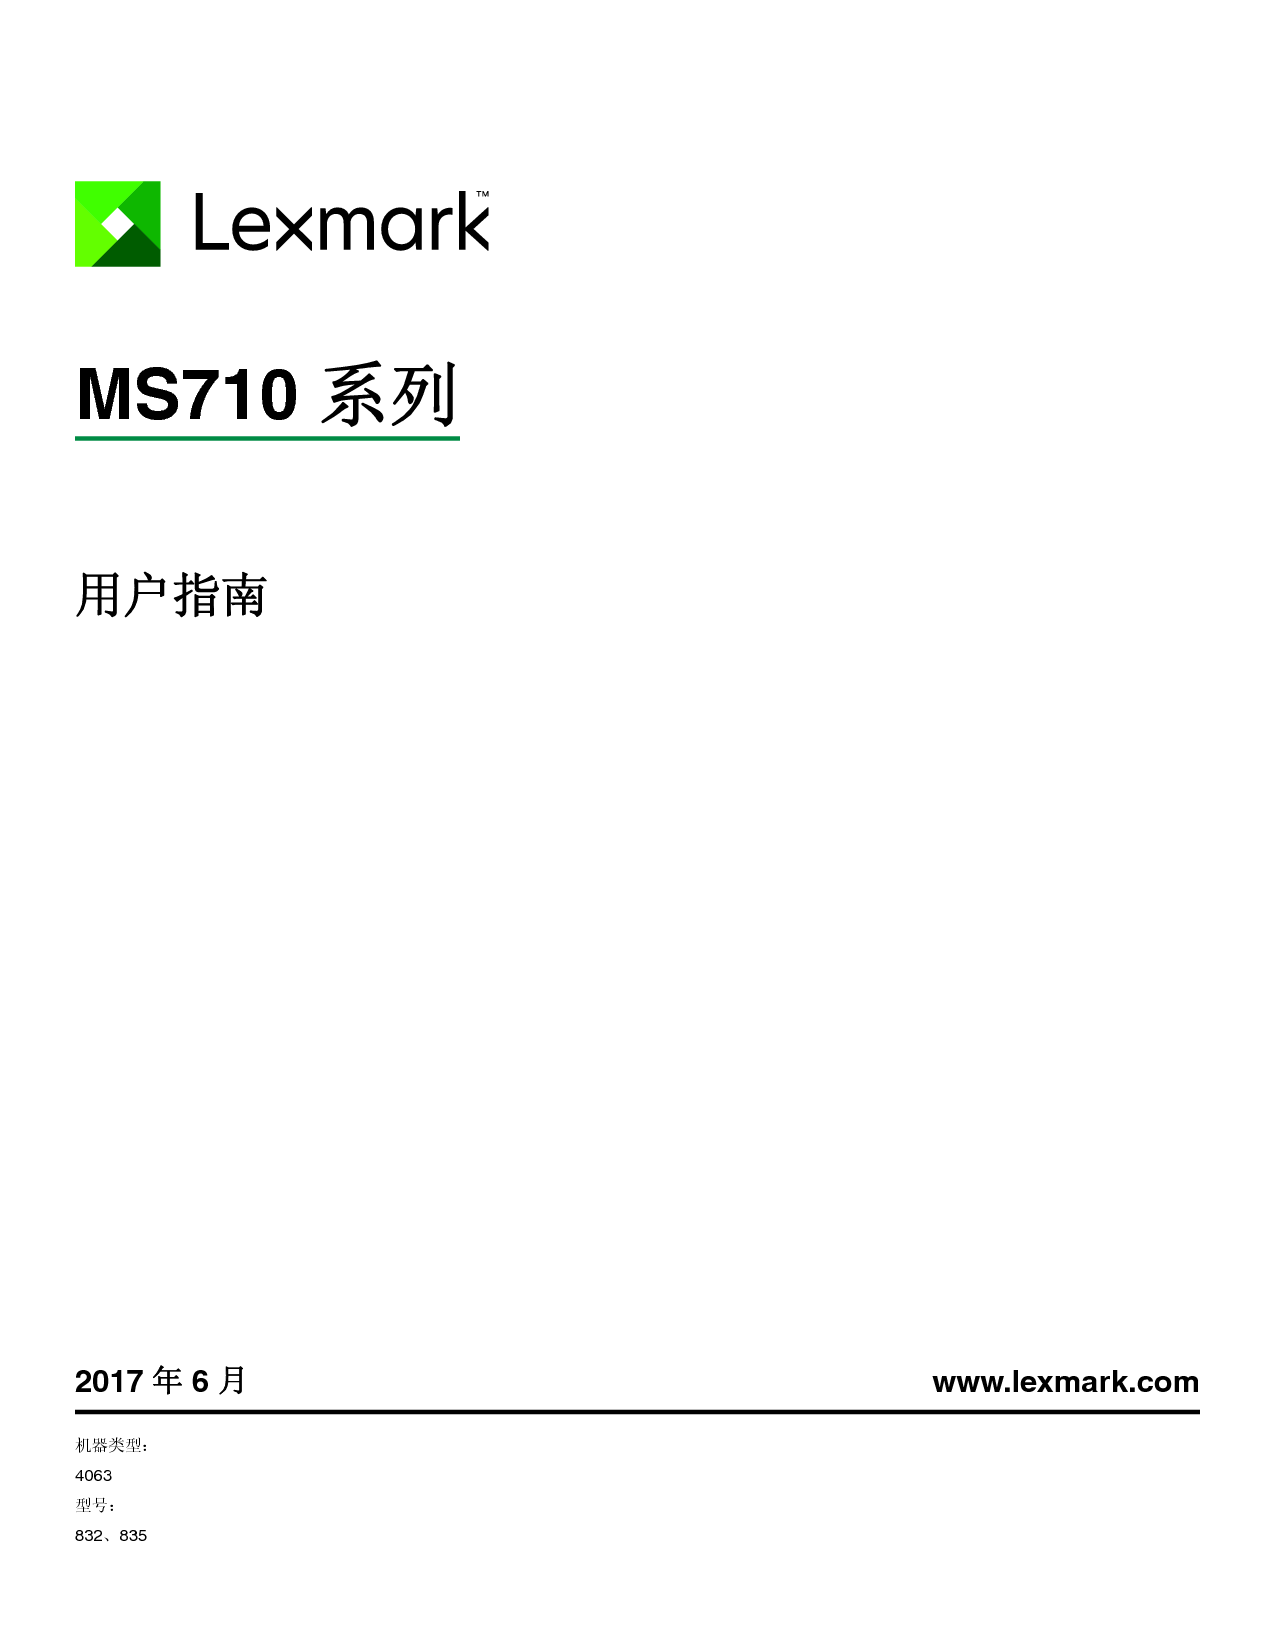 利盟 Lexmark MS710 用户指南 封面